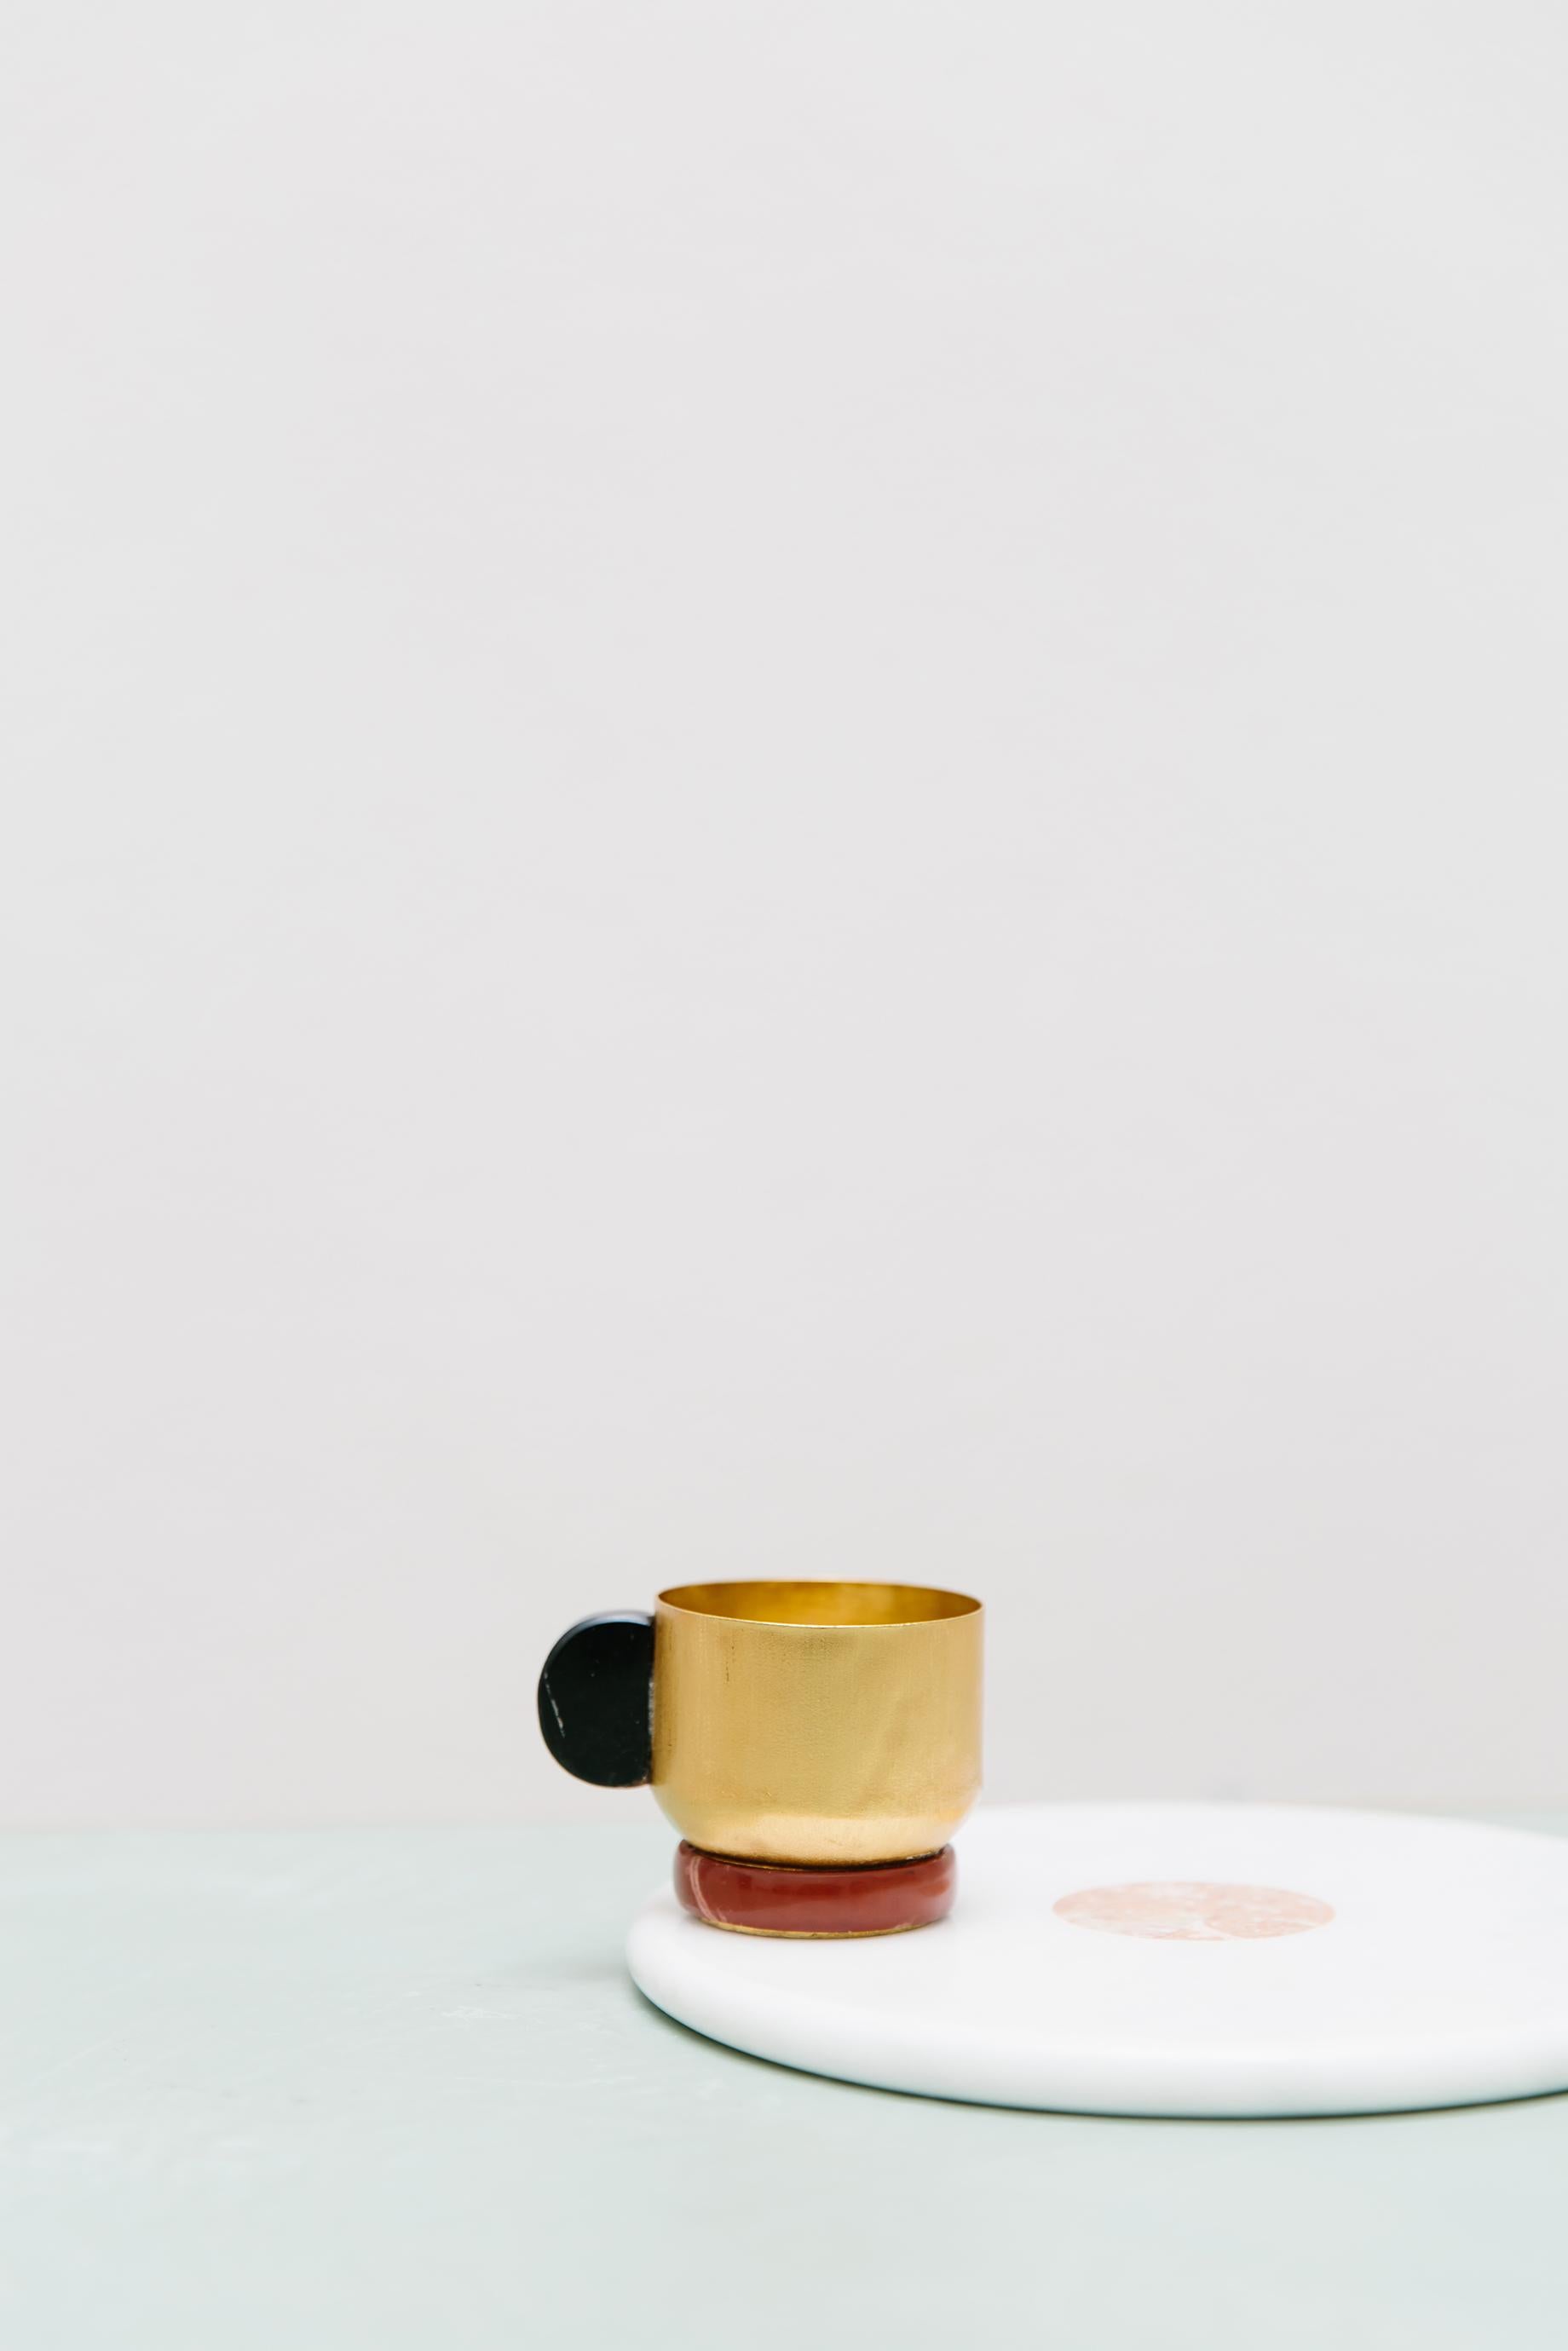 Améliorez votre rituel quotidien de thé ou de café avec notre tasse Onix exquise. La coupe en laiton plaqué est fabriquée à la main en Italie à l'aide de techniques de tournage de feuilles. Le manche, orné d'une pierre Onix, apporte une touche de